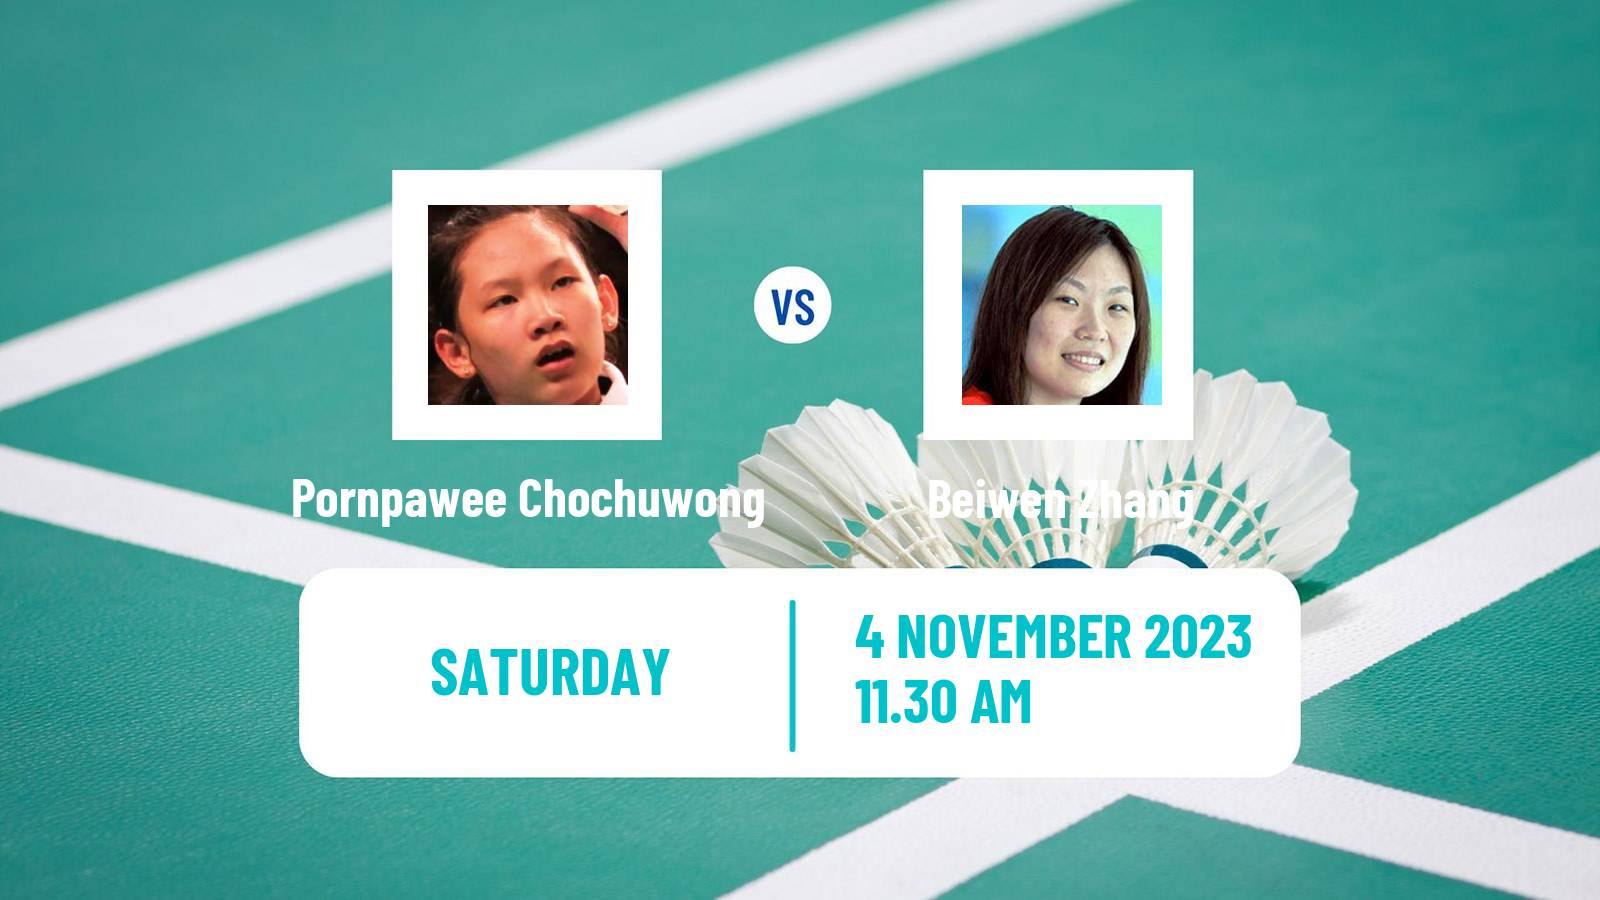 Badminton BWF World Tour Hylo Open Women Pornpawee Chochuwong - Beiwen Zhang